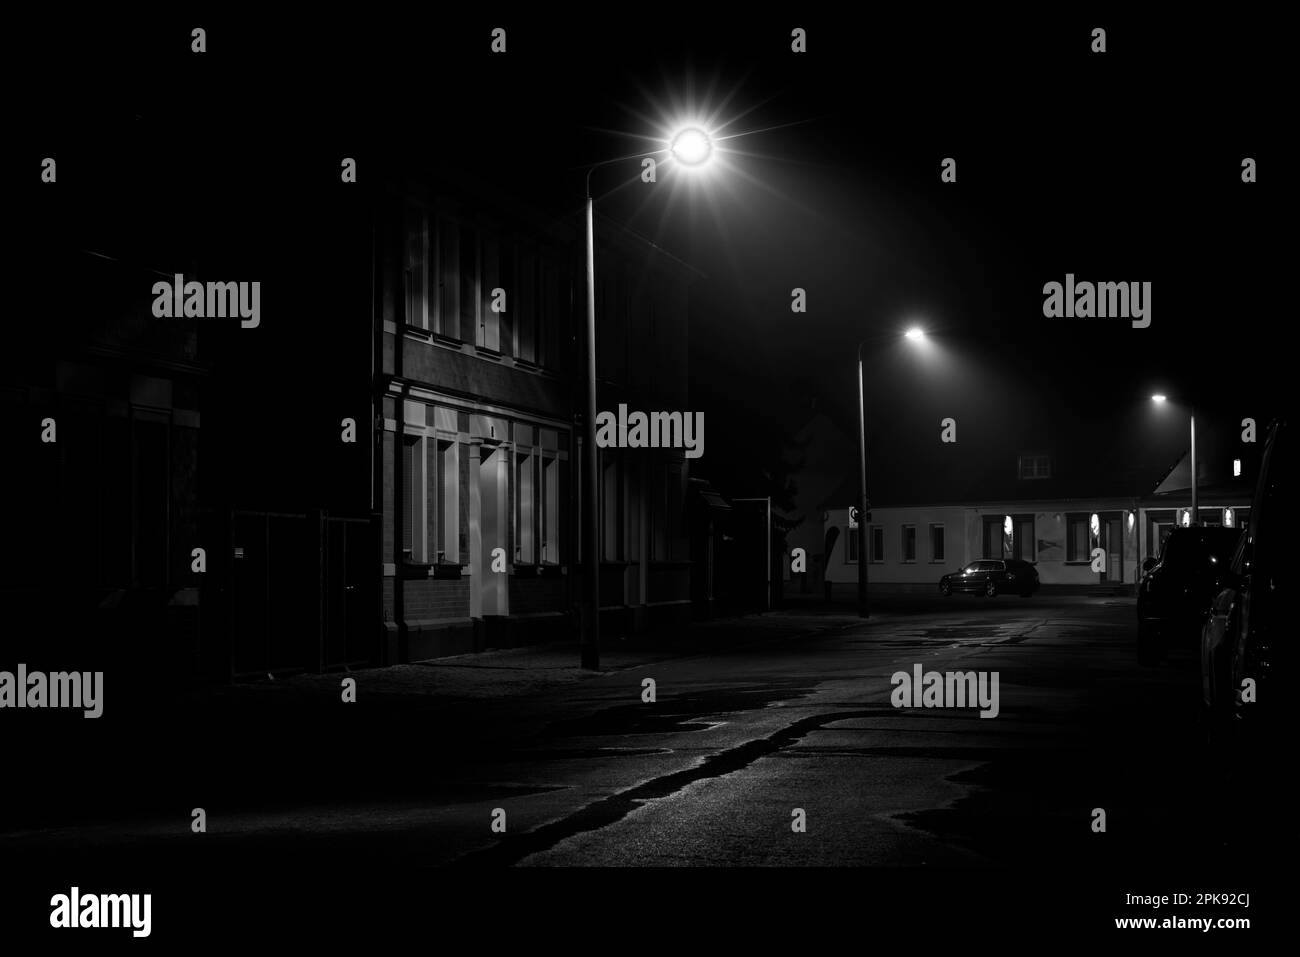 Nachts auf der Straße, kleiner Nebel in der Laterne, Autos parken am Straßenrand, Schwarzweiß-Fotografie Stockfoto